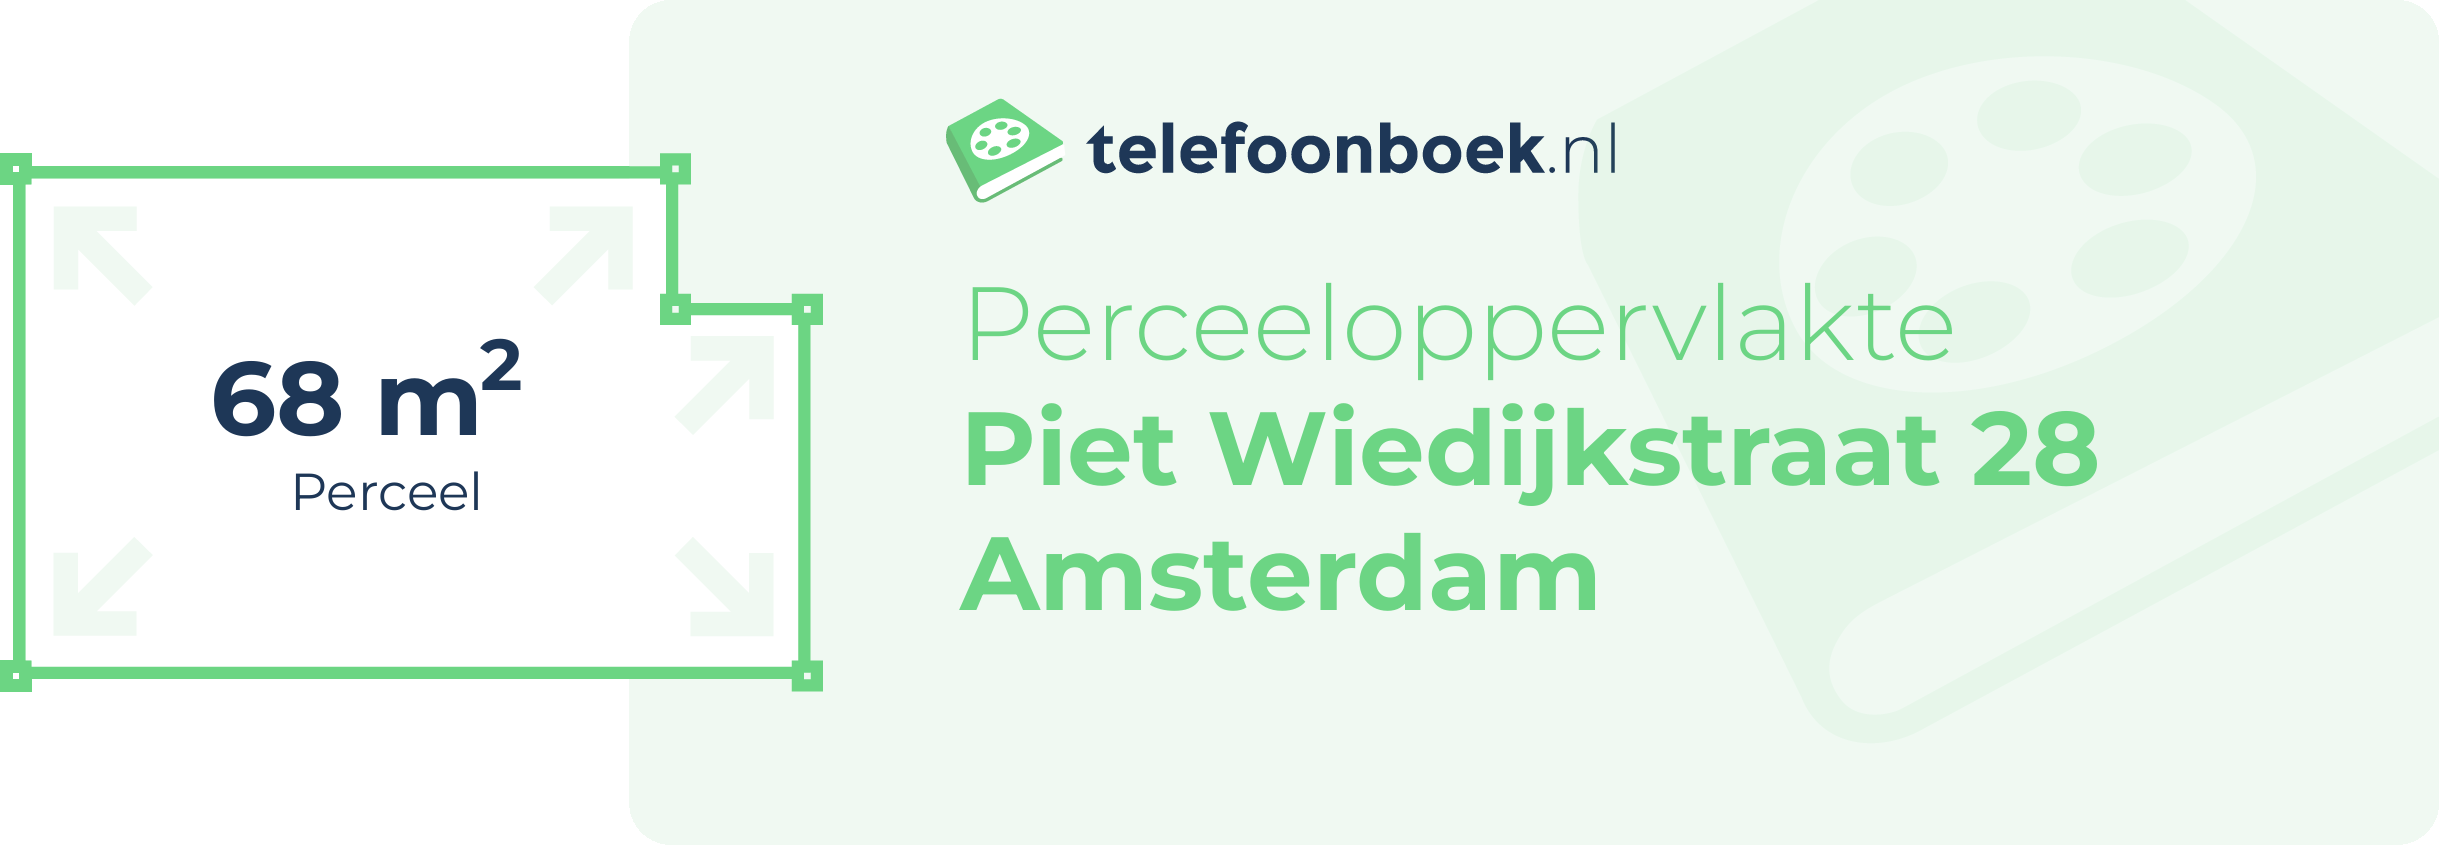 Perceeloppervlakte Piet Wiedijkstraat 28 Amsterdam